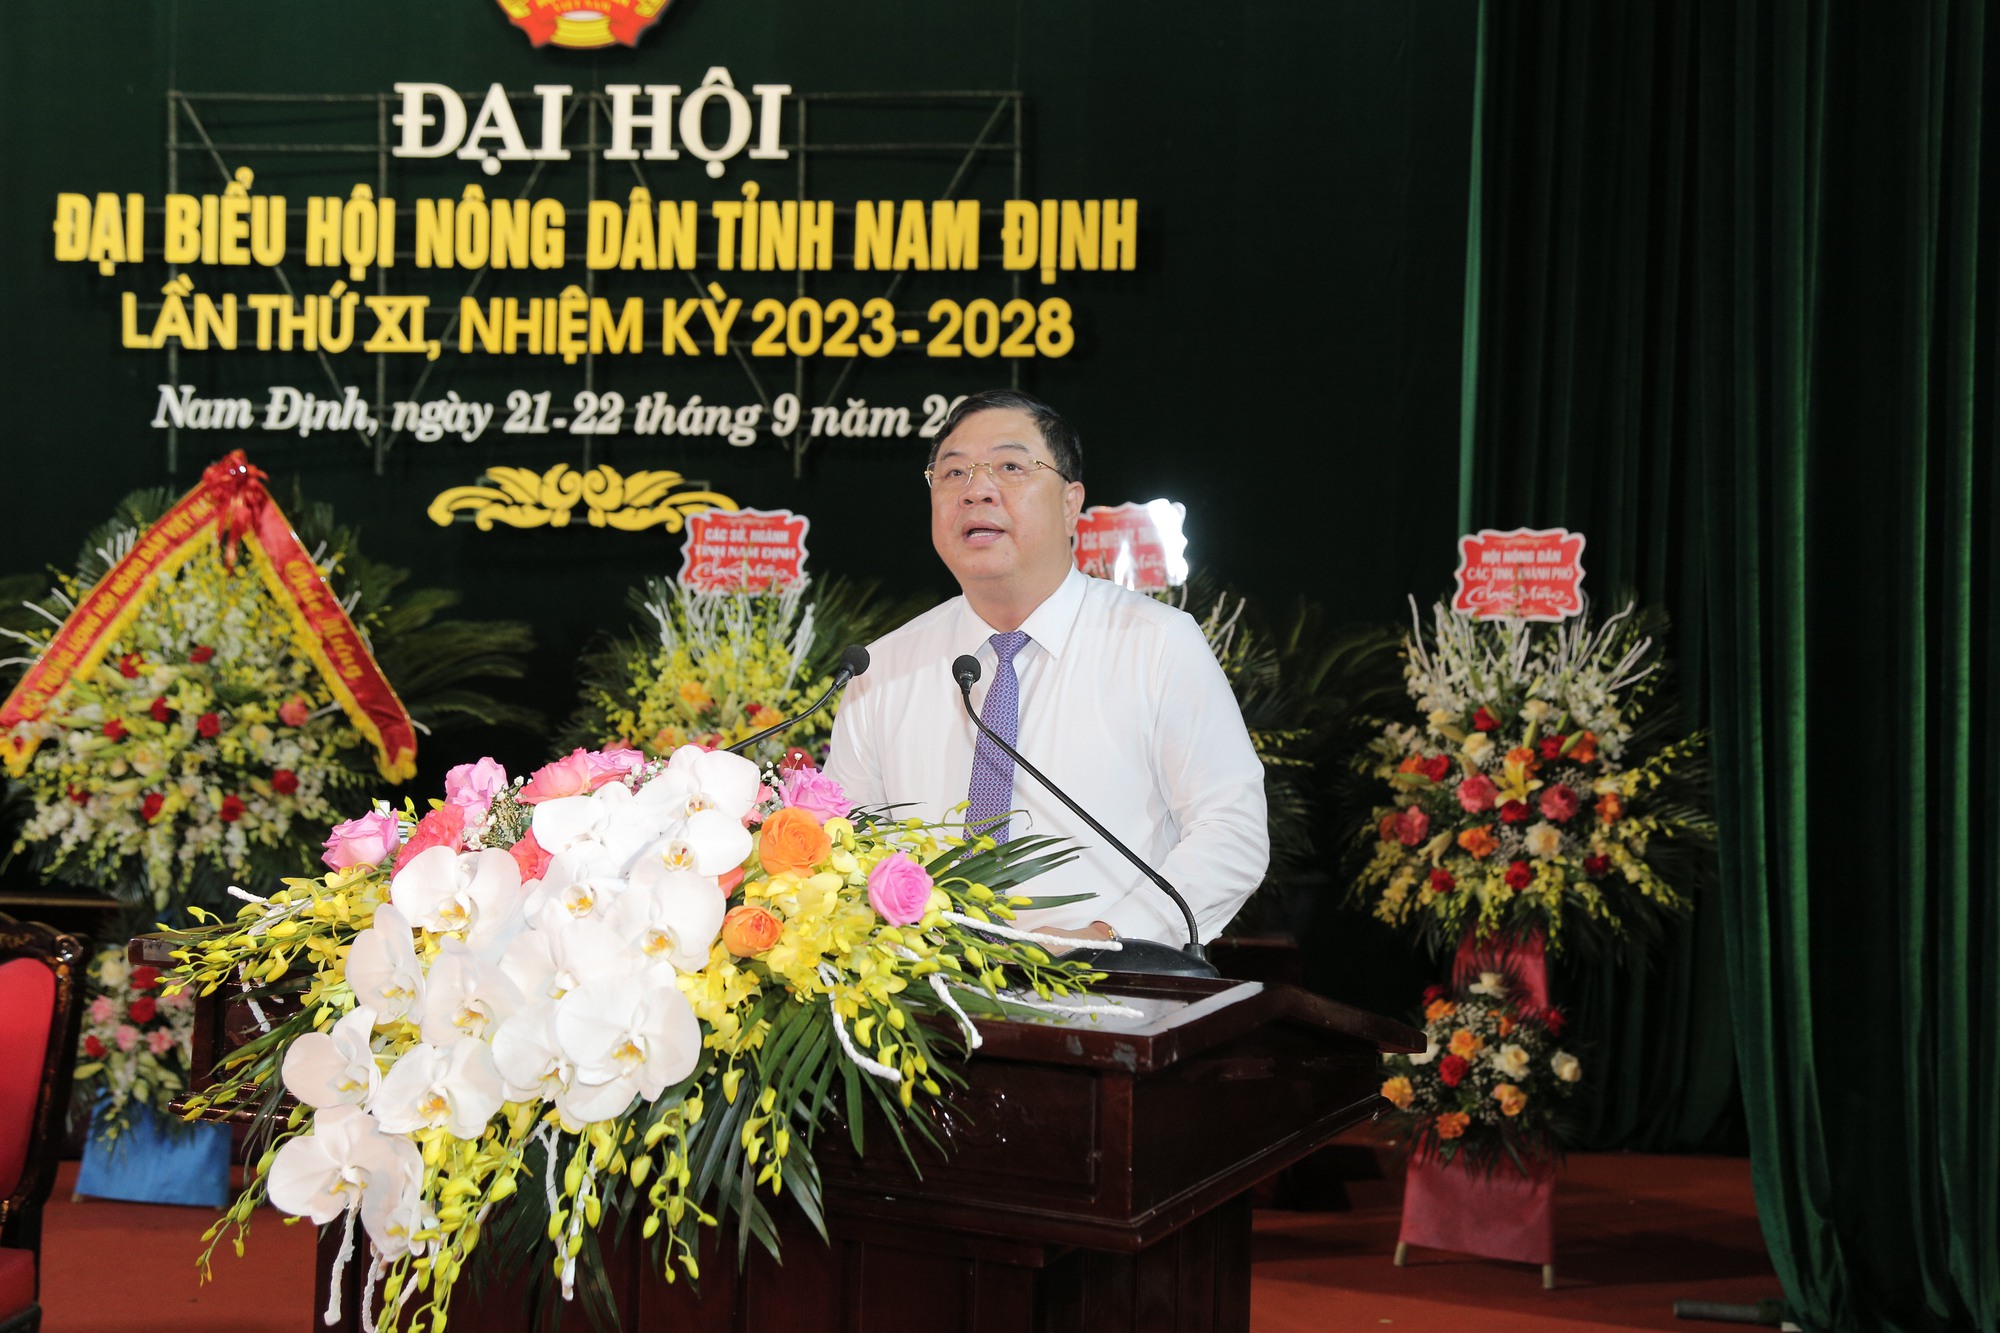 Chủ tịch Hội NDVN, Bí thư Tỉnh ủy Nam Định dự, chỉ đạo Đại hội đại biểu Hội Nông dân tỉnh Nam Định  - Ảnh 4.